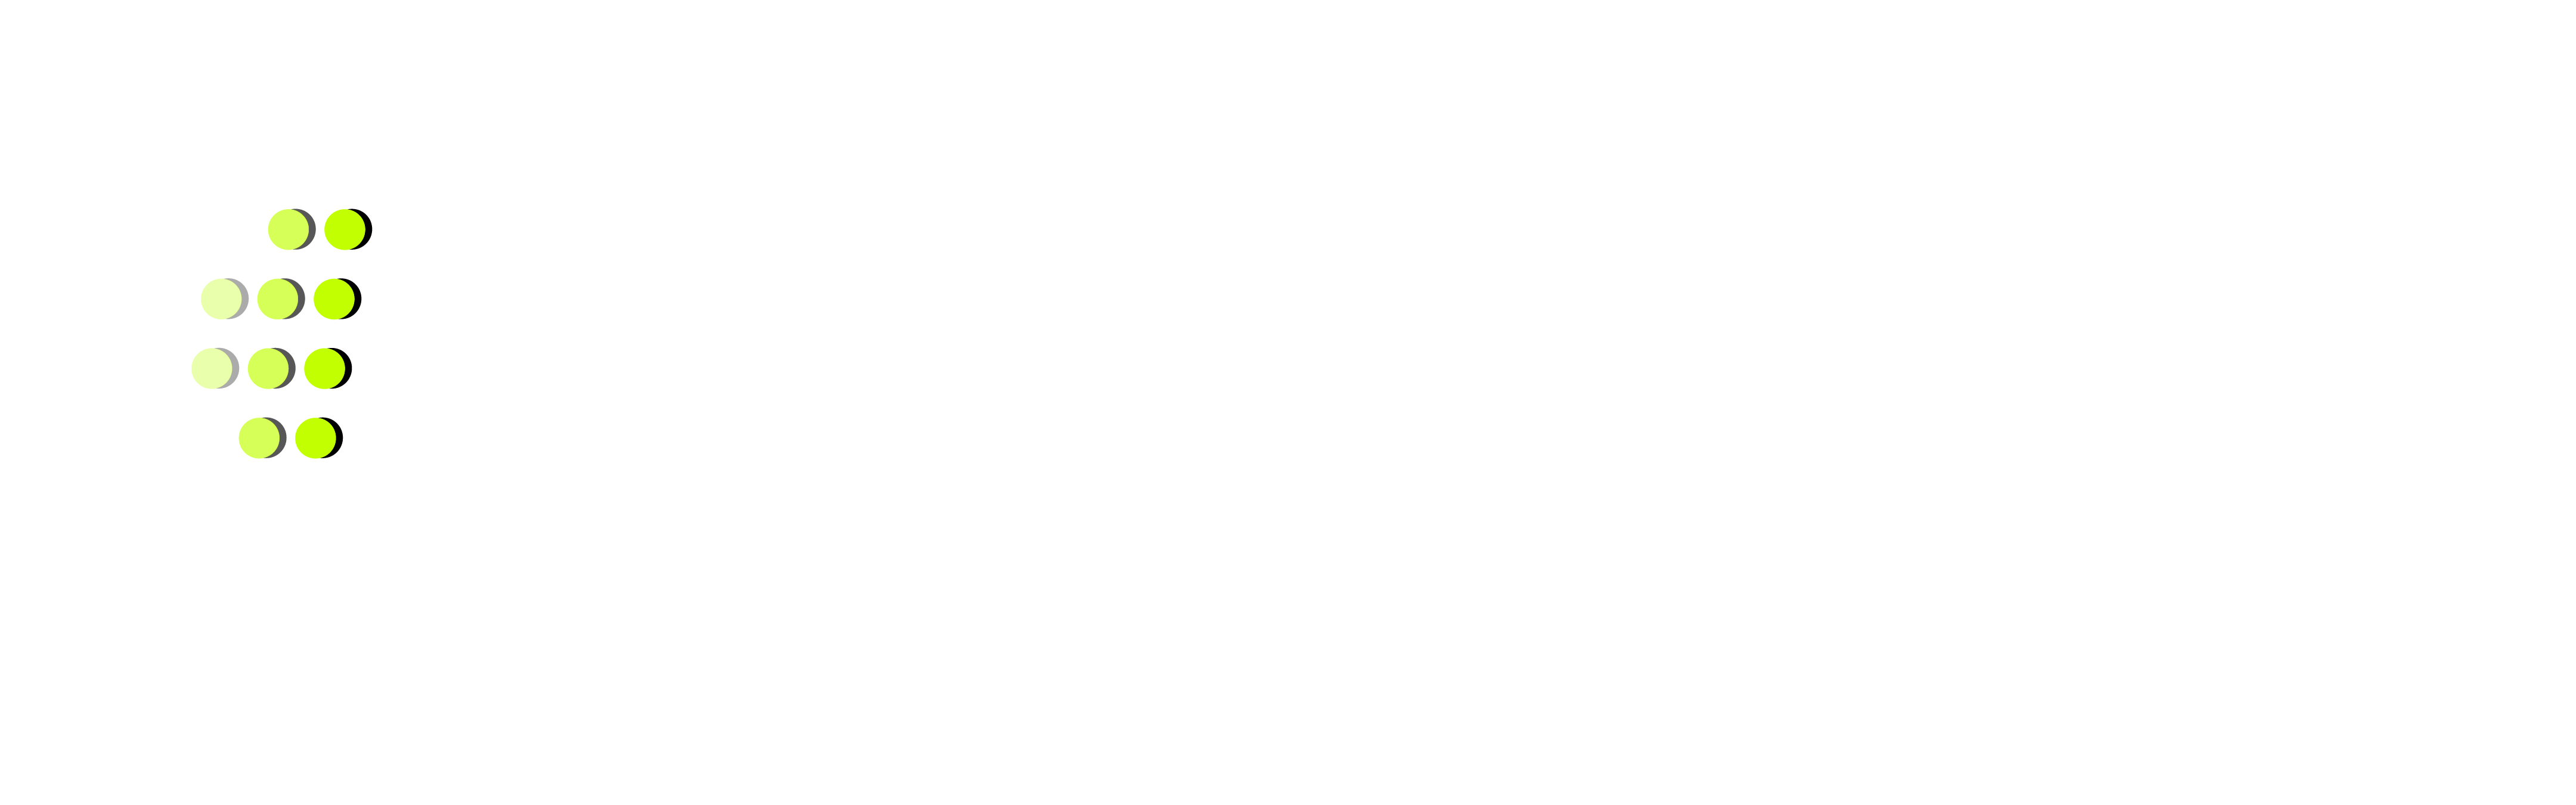 InterPadel Harstad Logo